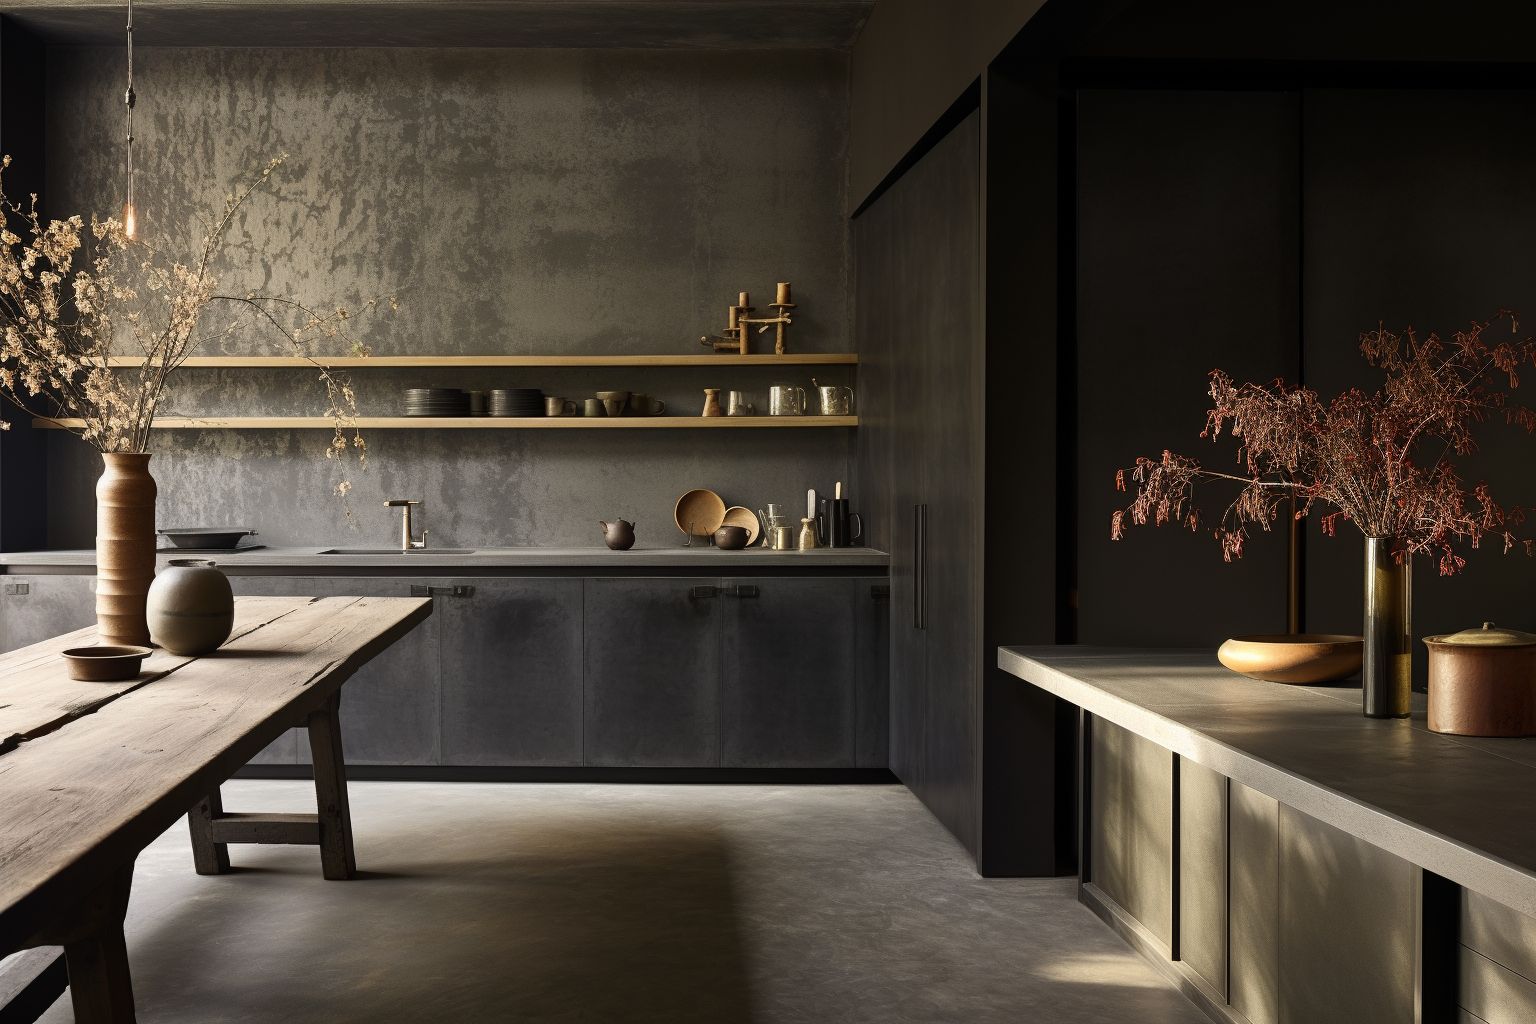 műgyanta felületekkel készült konyha, rusztikus elegáns design